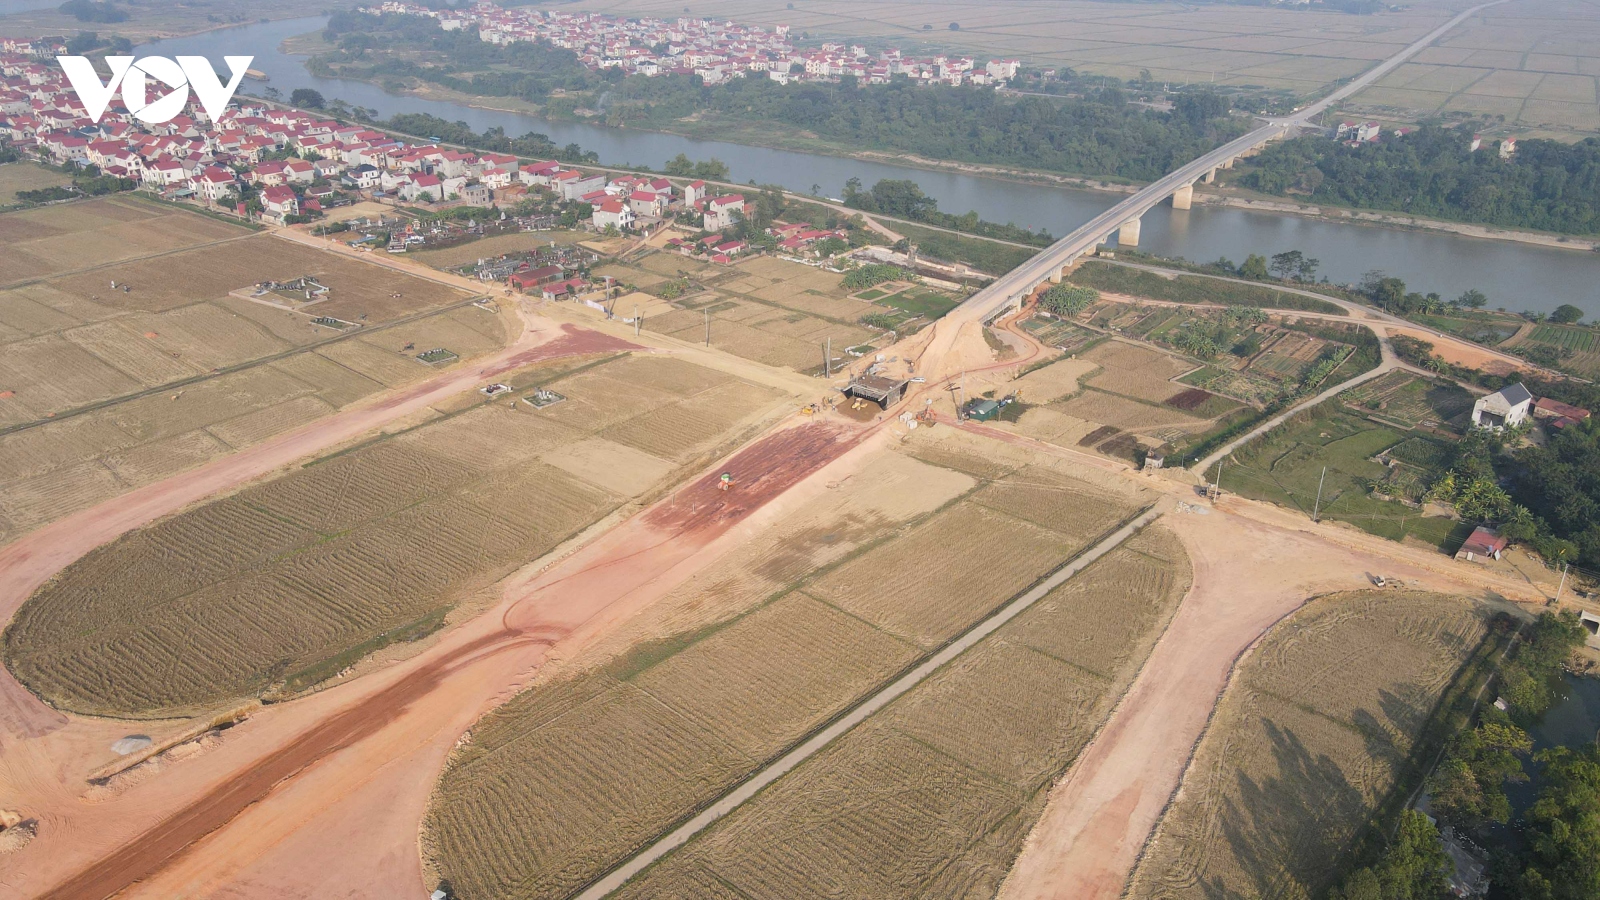 Hiện trạng cây cầu cụt trăm tỷ nối Hà Nội - Bắc Giang sắp được "hồi sinh"